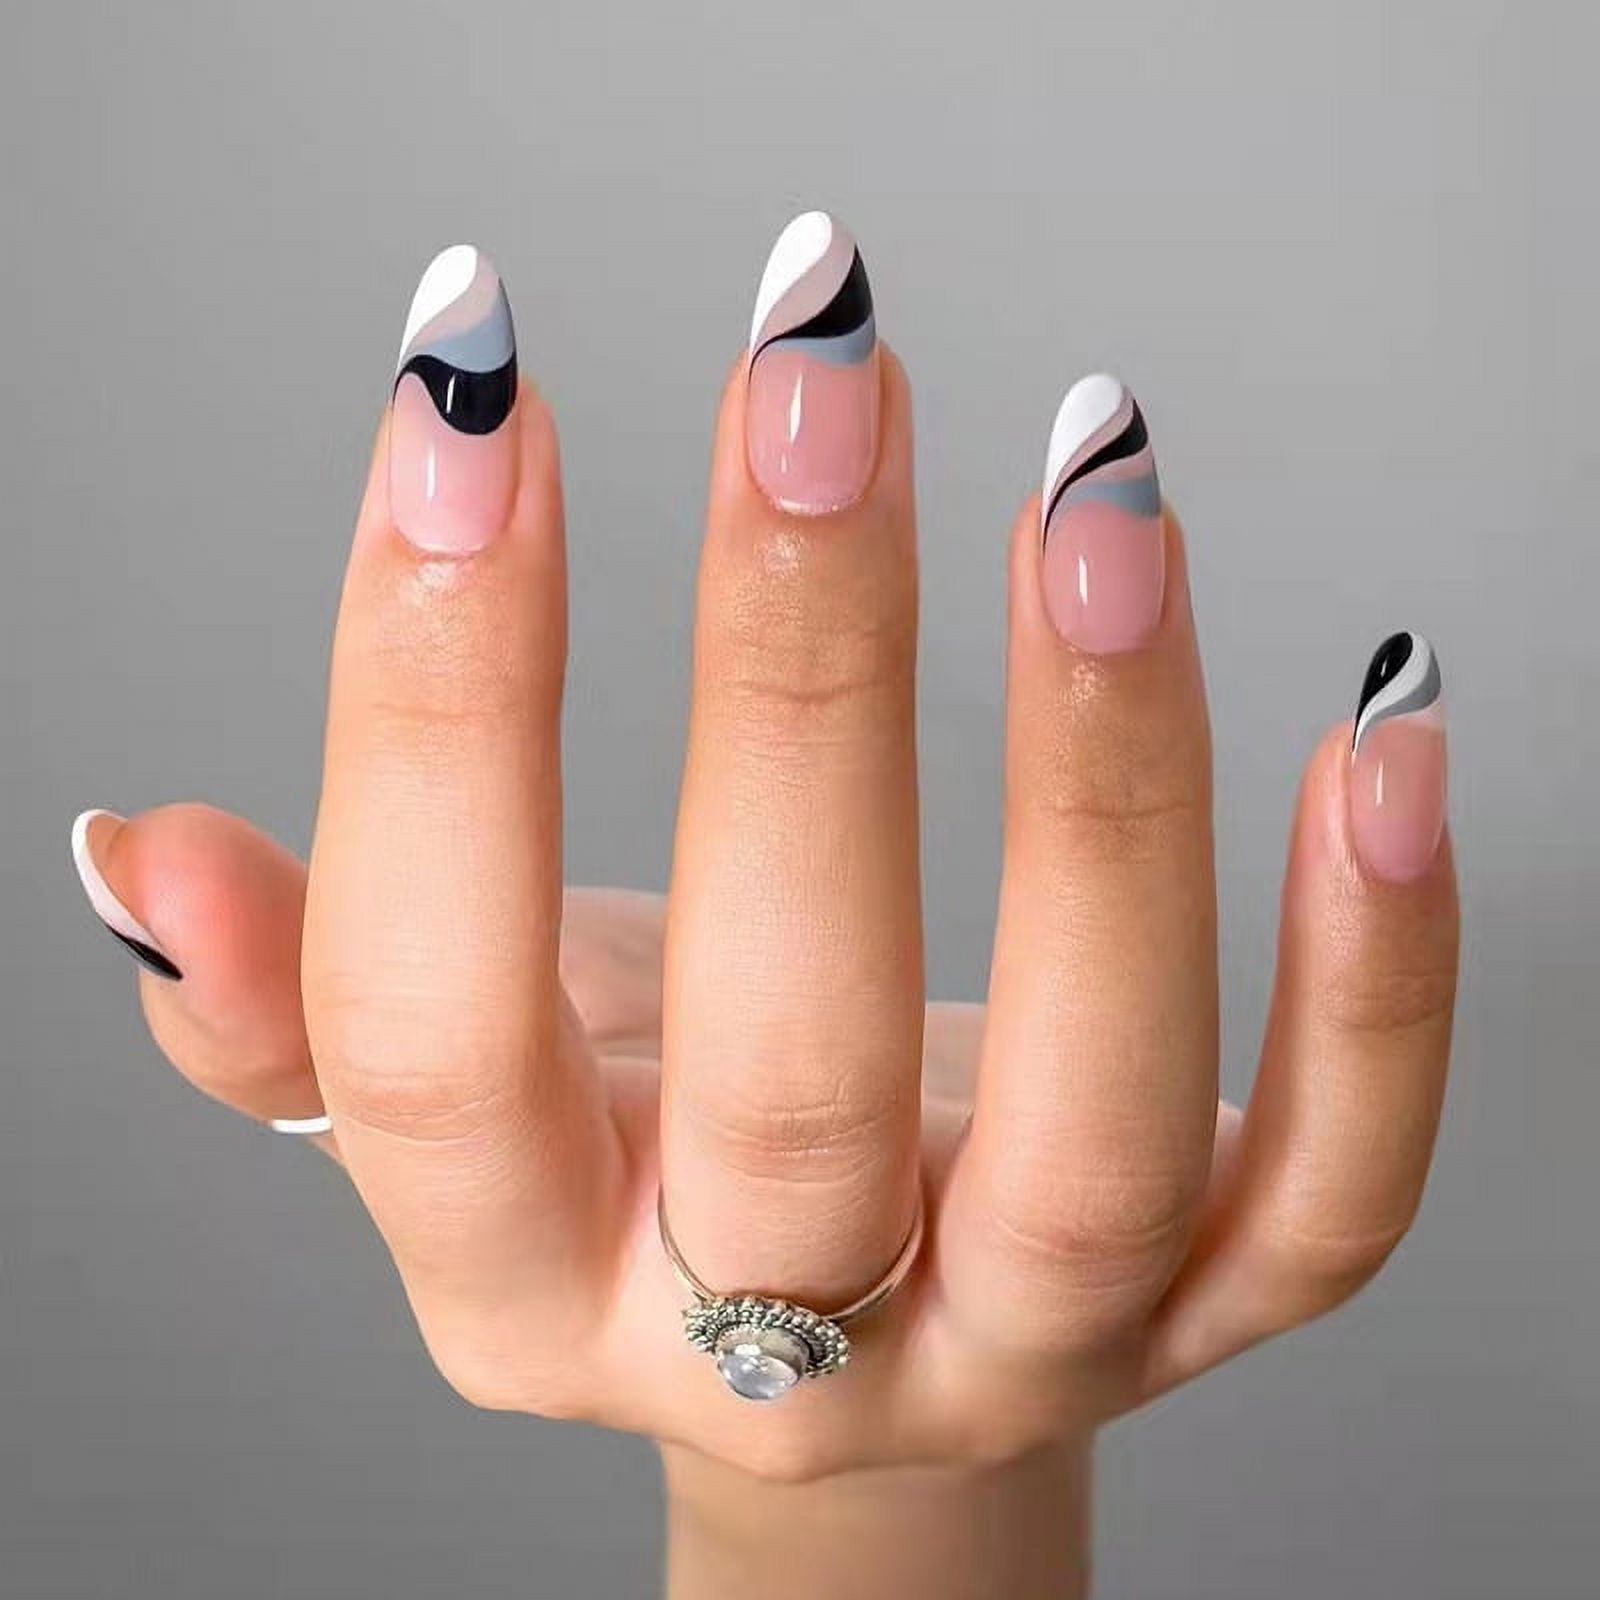 Black and white French manicure | Azuri V.'s (Azuri) Photo | Beautylish